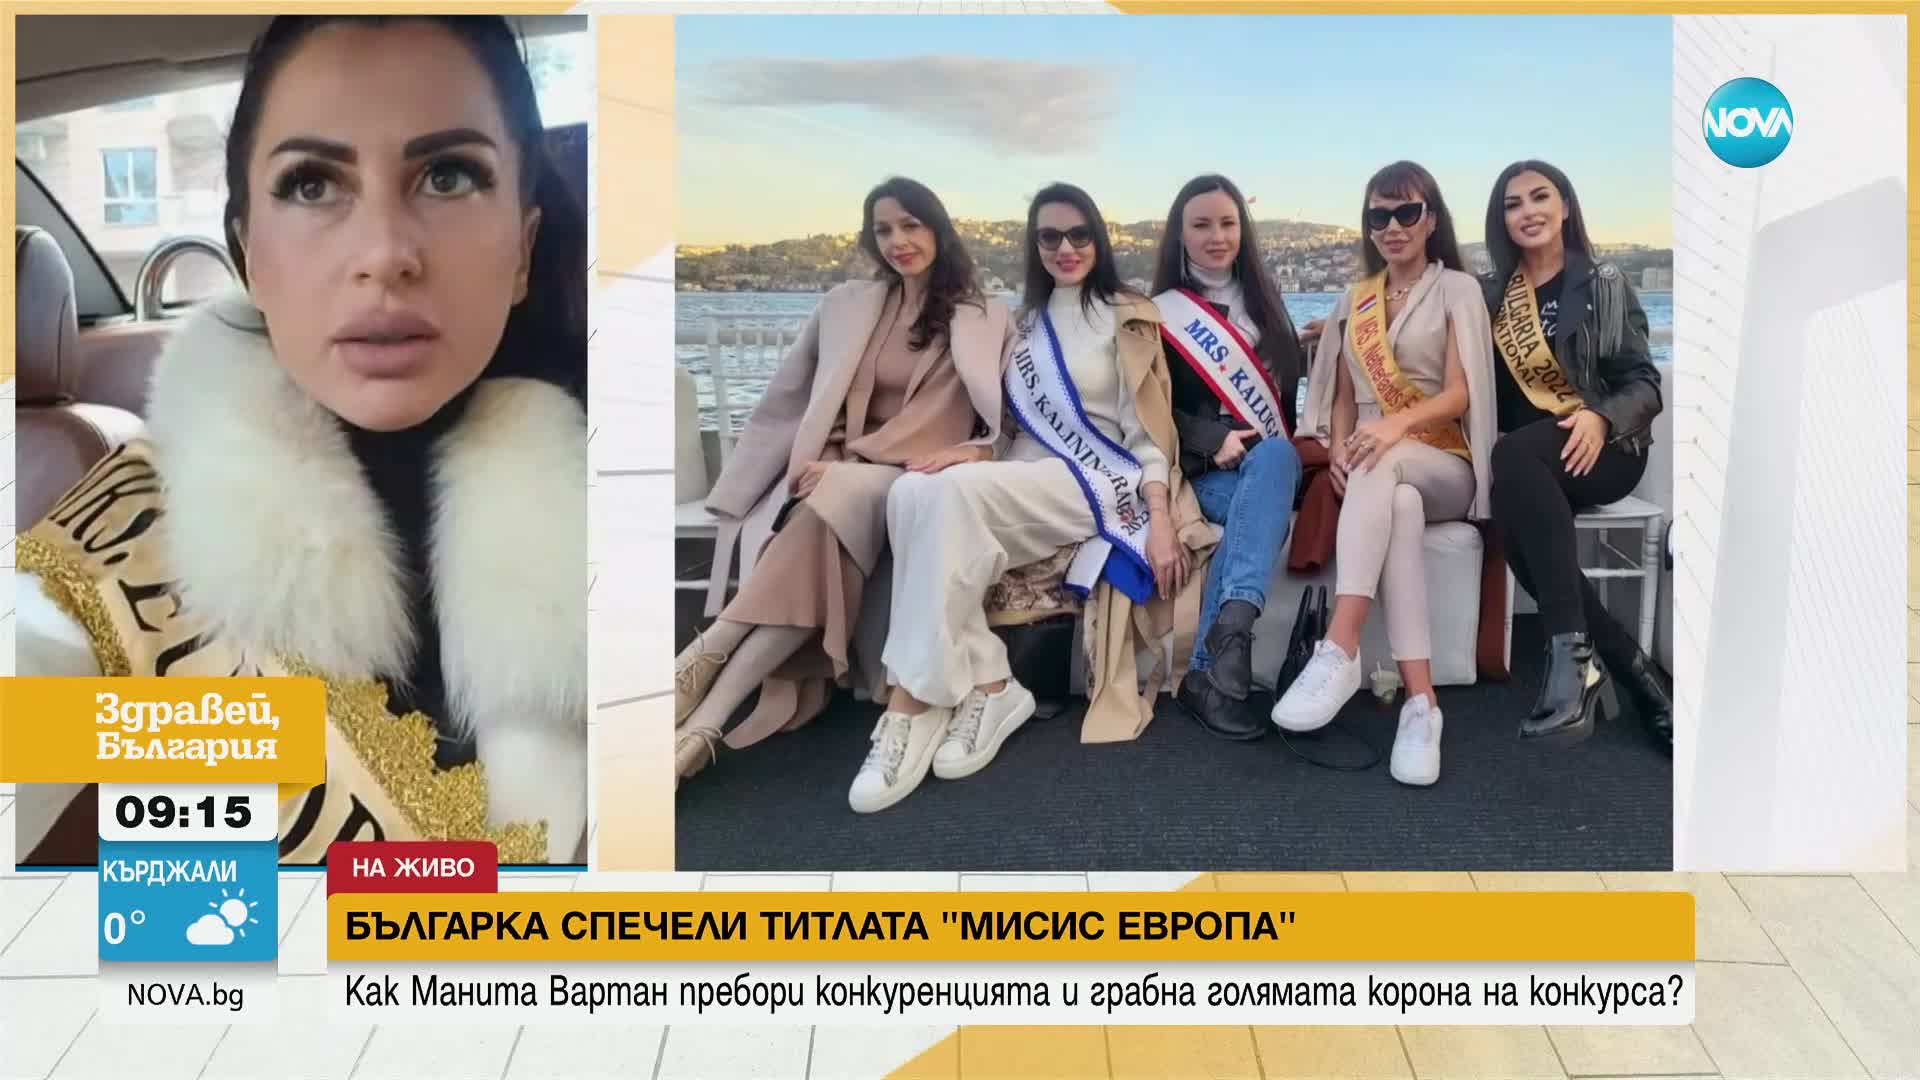 Българка спечели титлата "Мисис Европа"